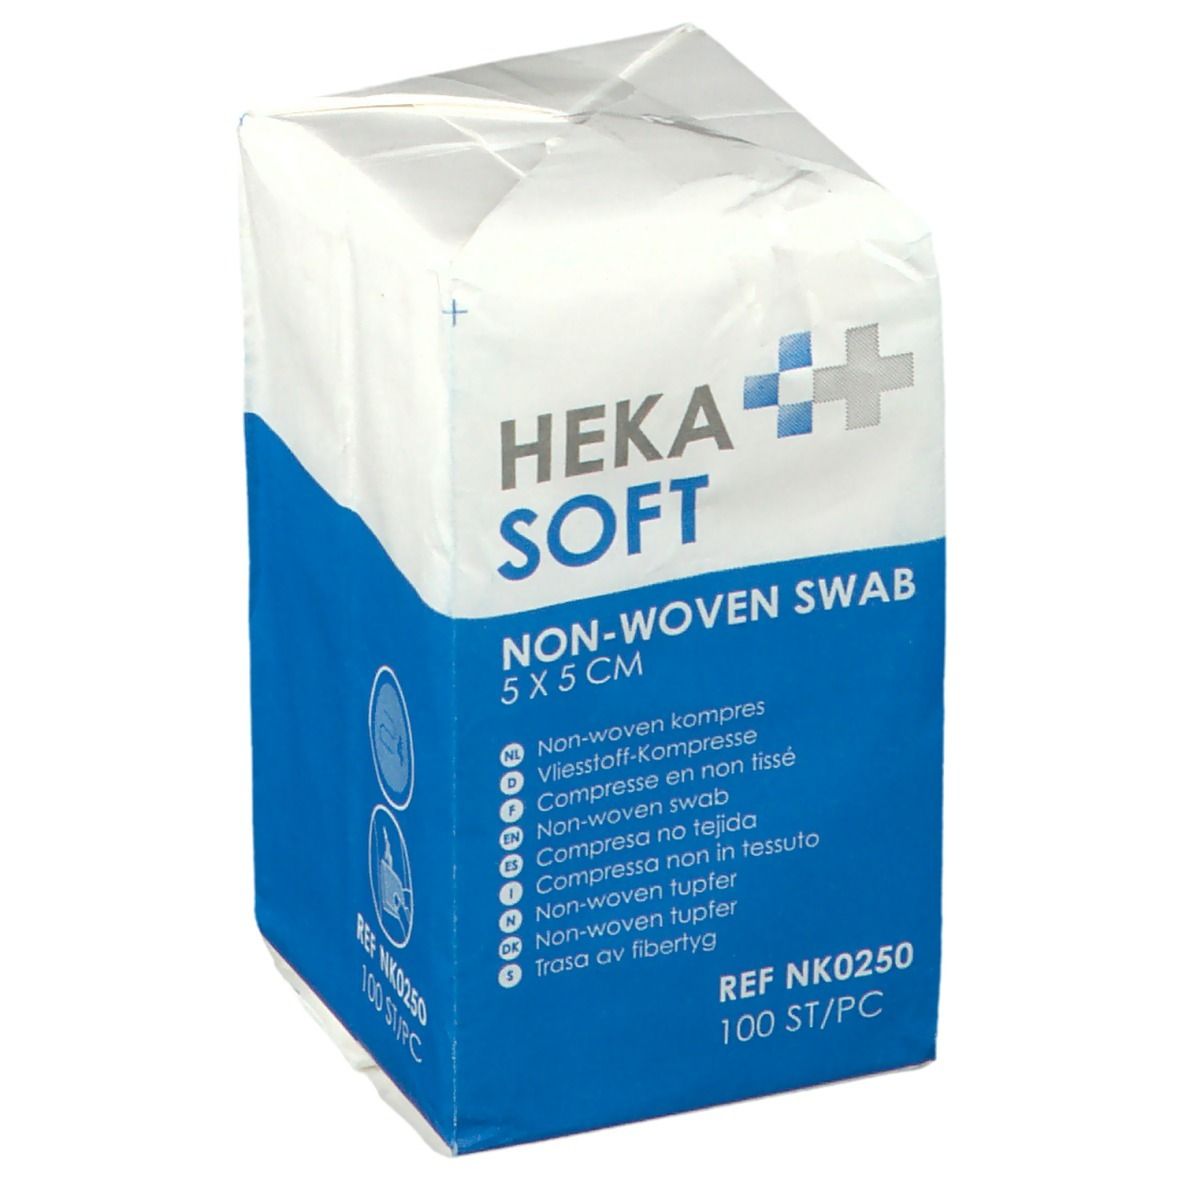 Heka Soft Compresse non tissée non stérile 5 x 5 cm